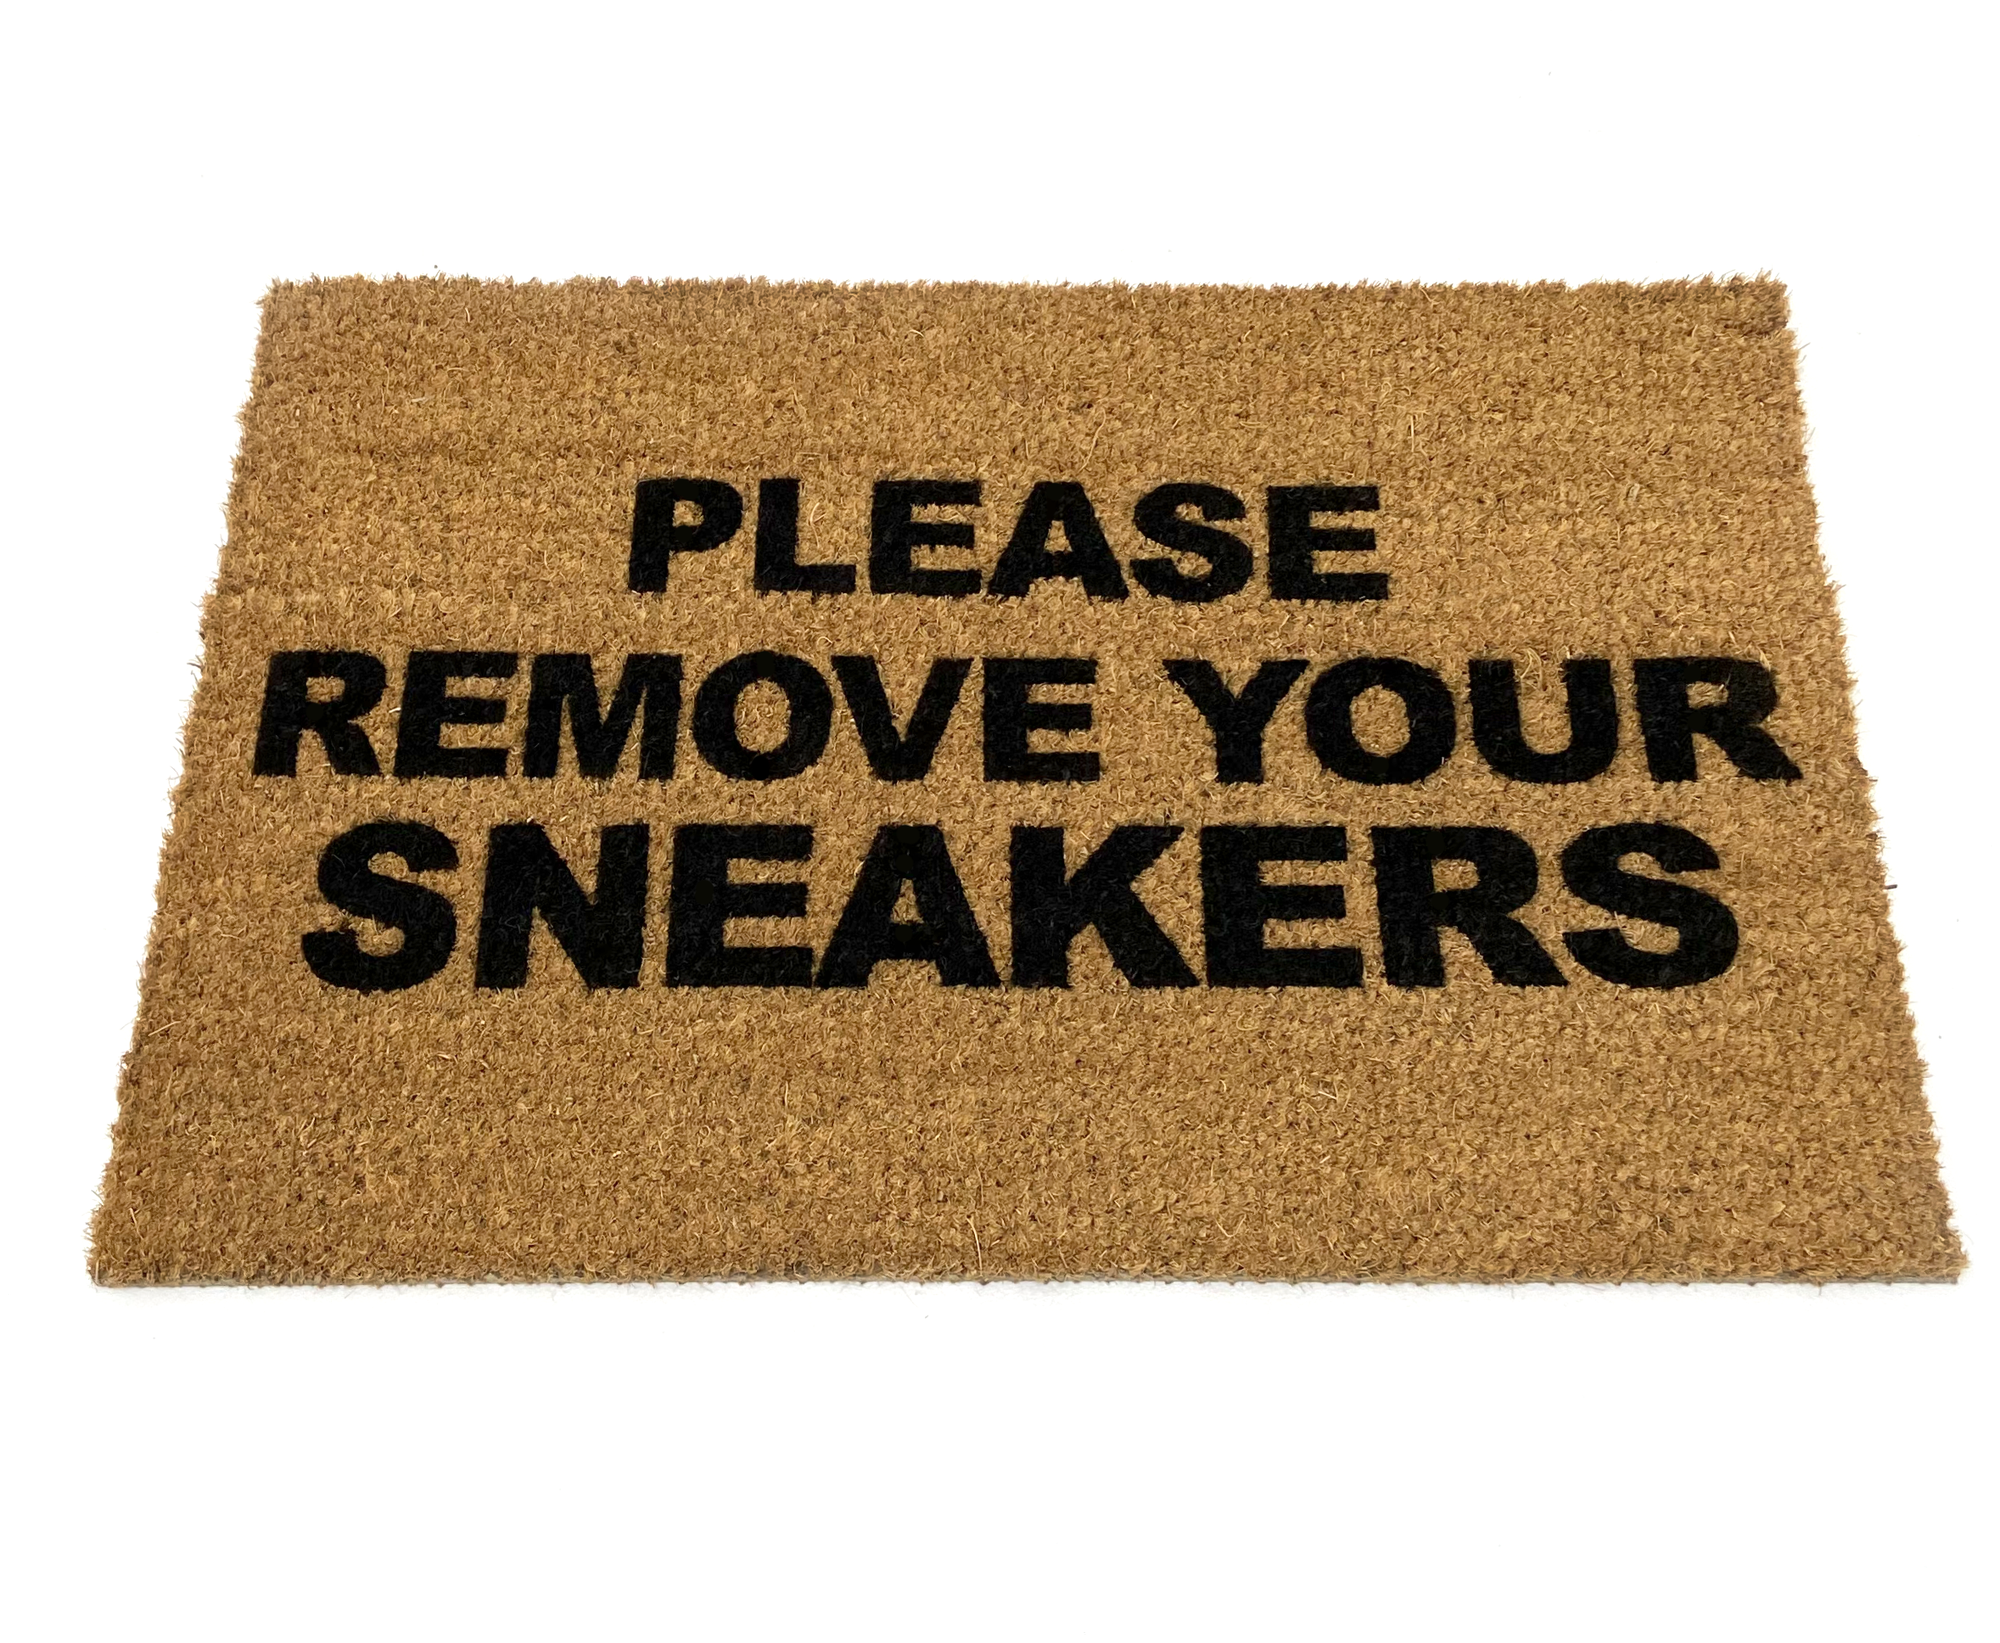 Ковёр PLEASE REMOVE YOUR SNEAKERS Kicks Place коврик для кроссовок и обуви придверный комнатный 60см х 40см дизайнерское дополнение